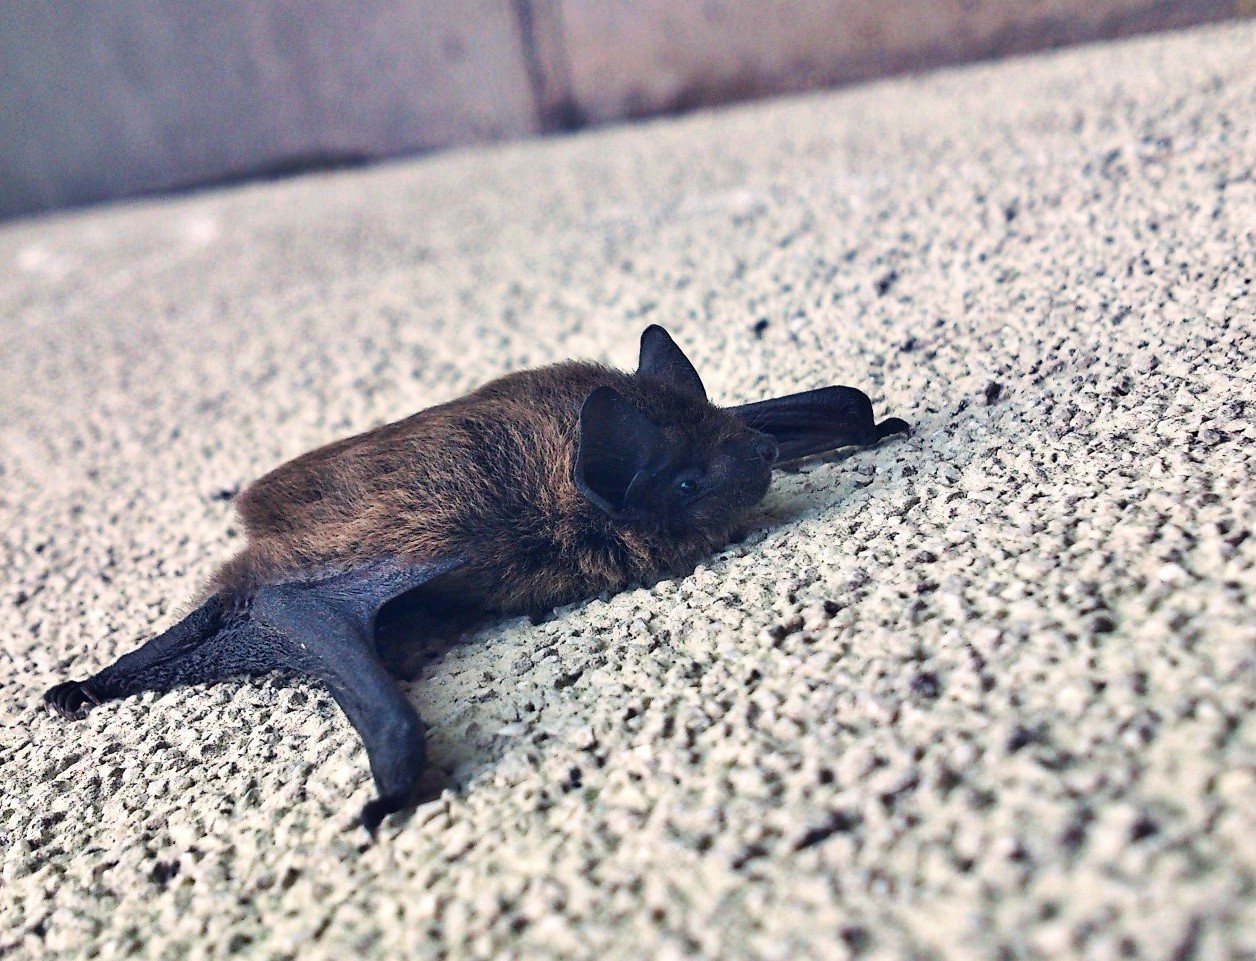 Can Bats Get Stuck In Walls? - PCA Wildlife